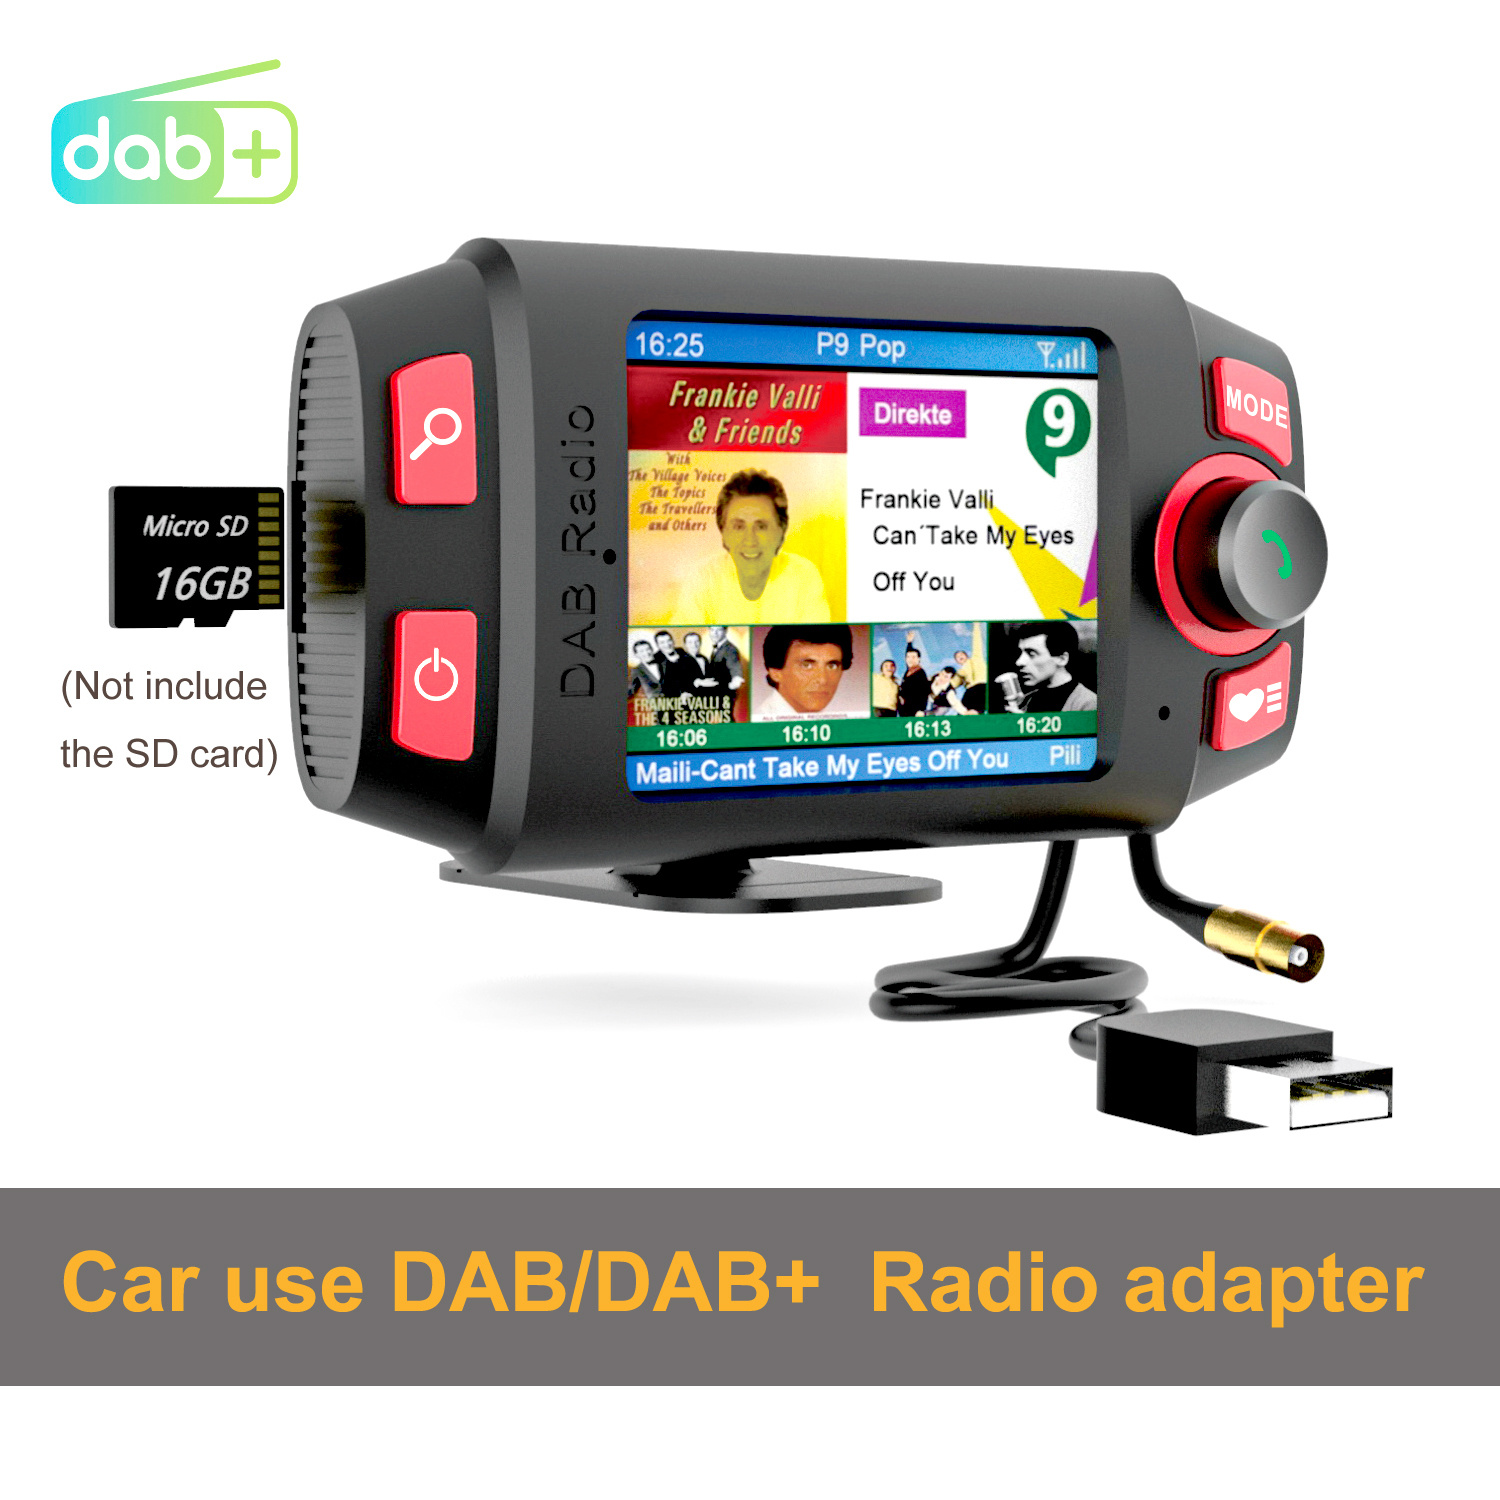 DAB DAB+ Radio Receiver Antenna, Car Digital Radio Receiver Car Radio  Aerial with MCX Male Port